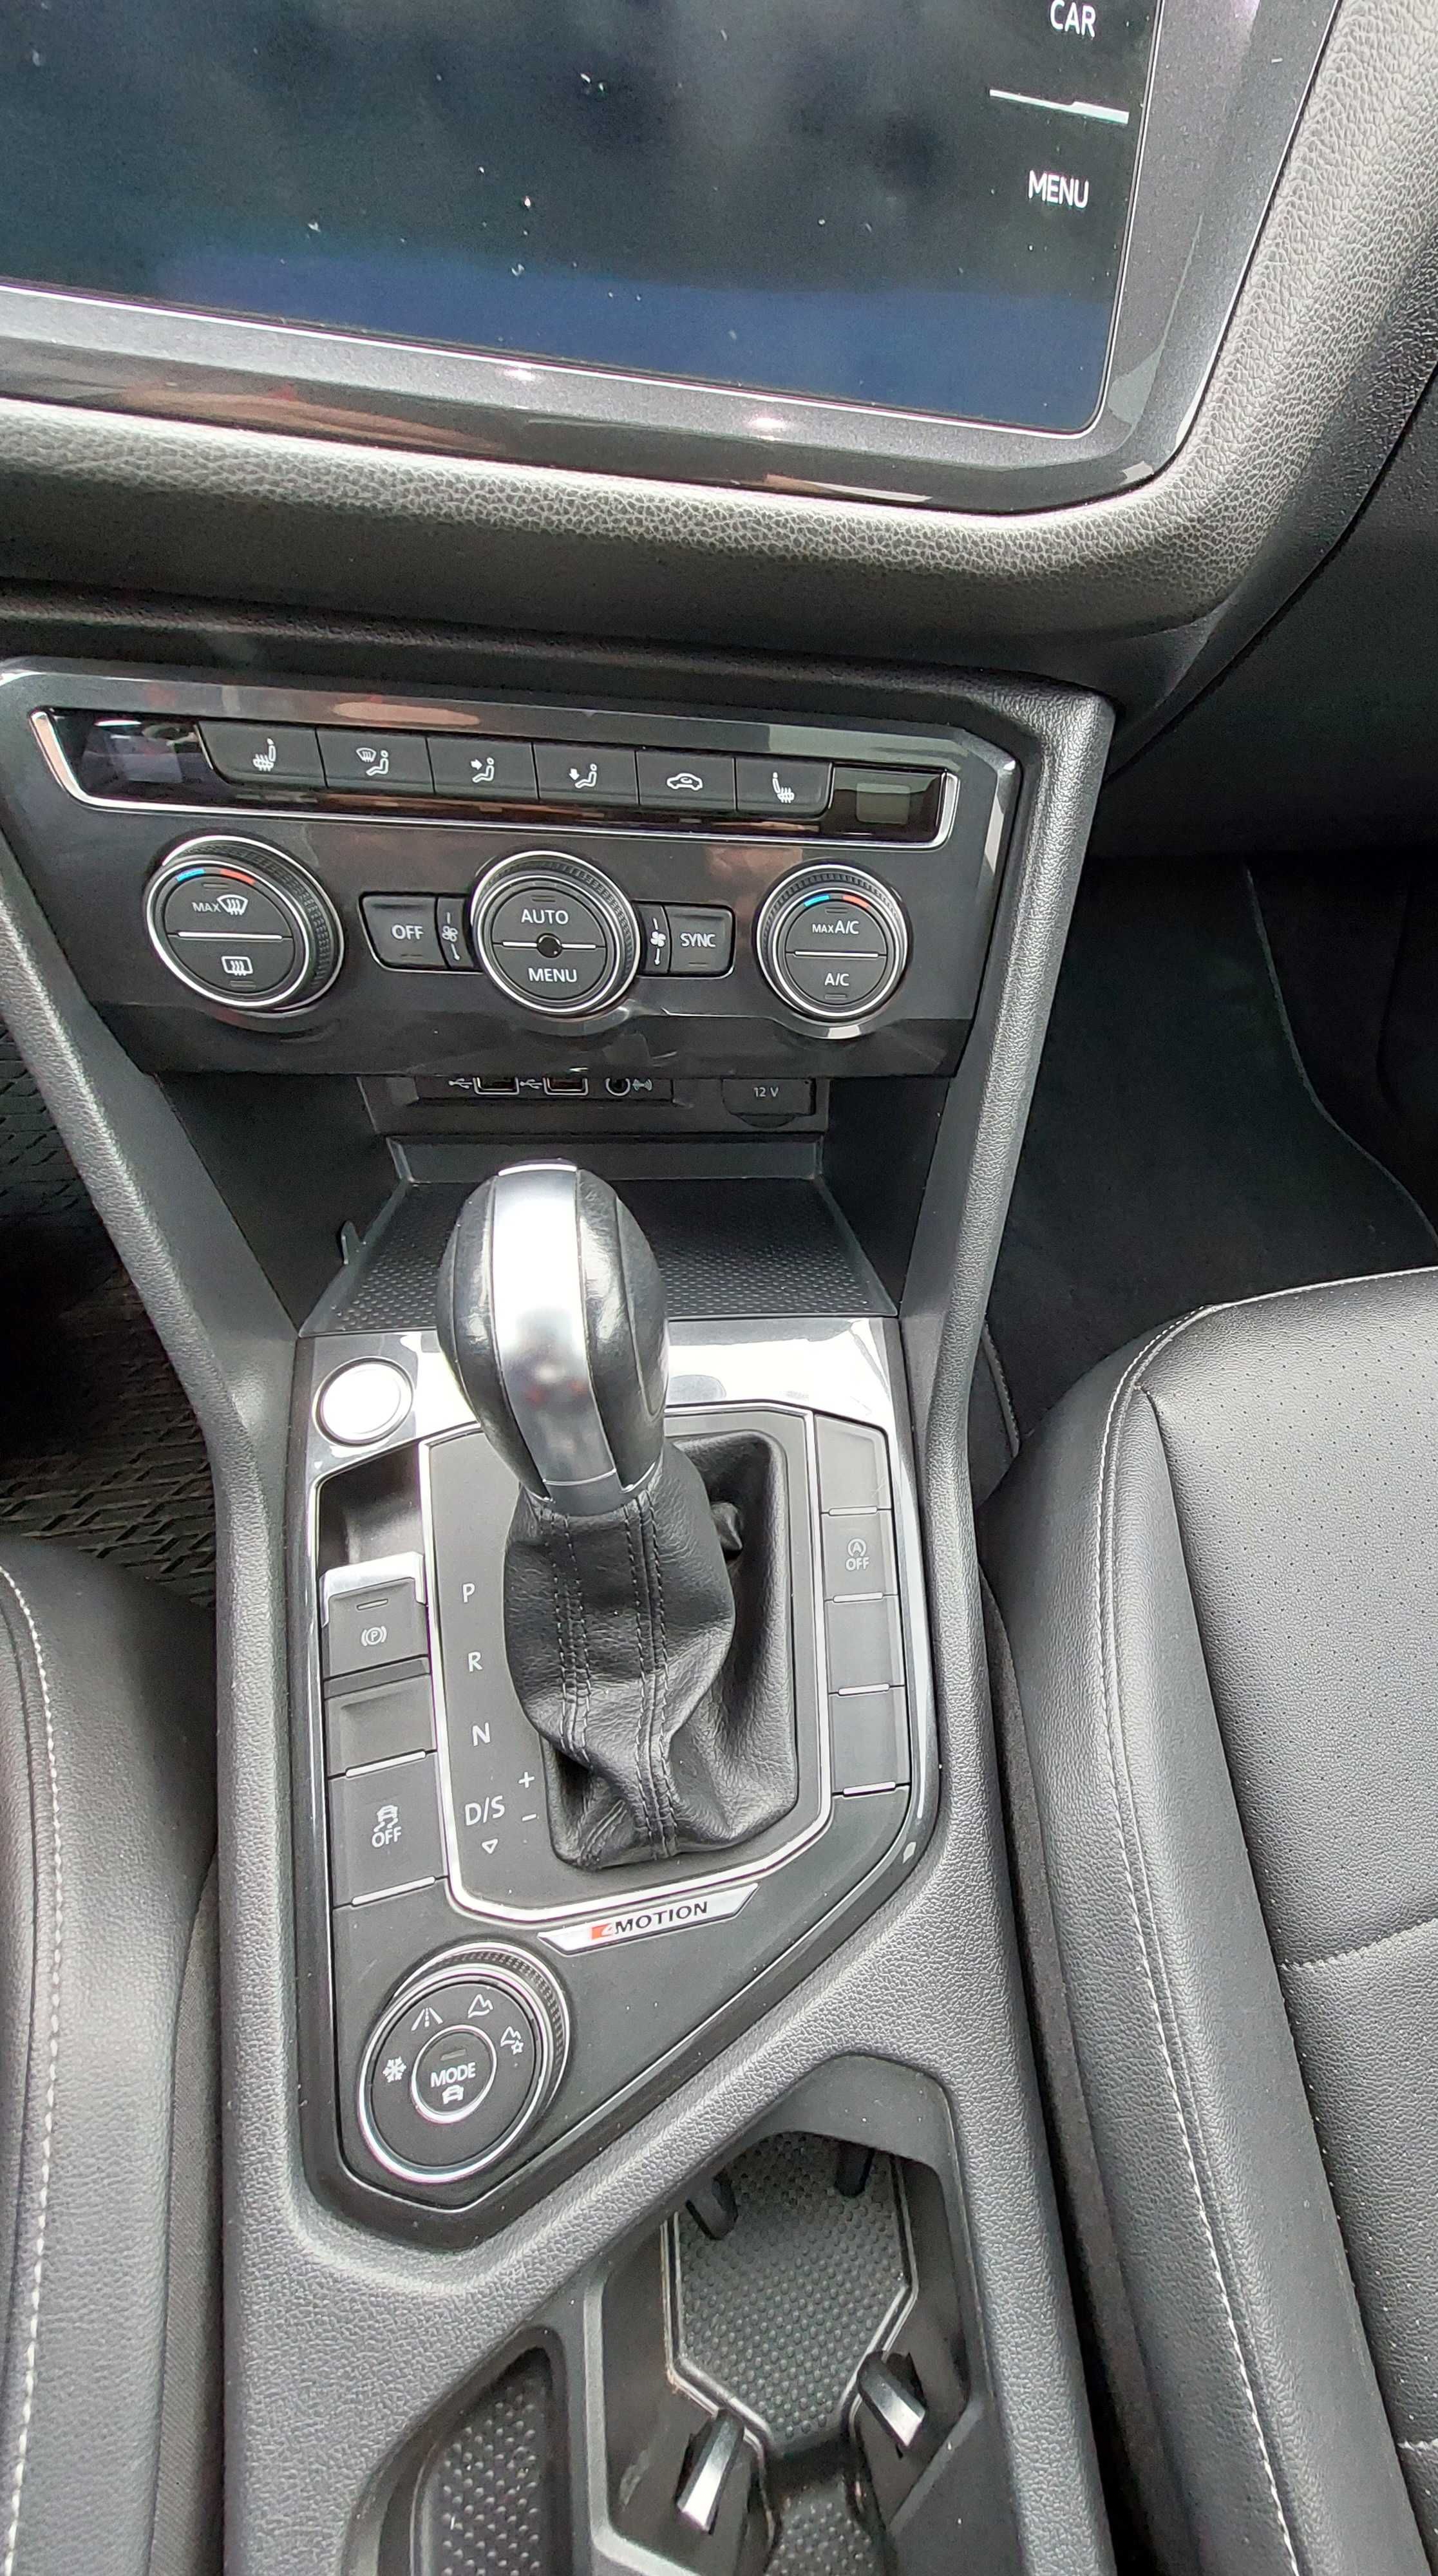 Продам Volkswagen Tiguan Allspace 2018р, 2, 0 4Motion